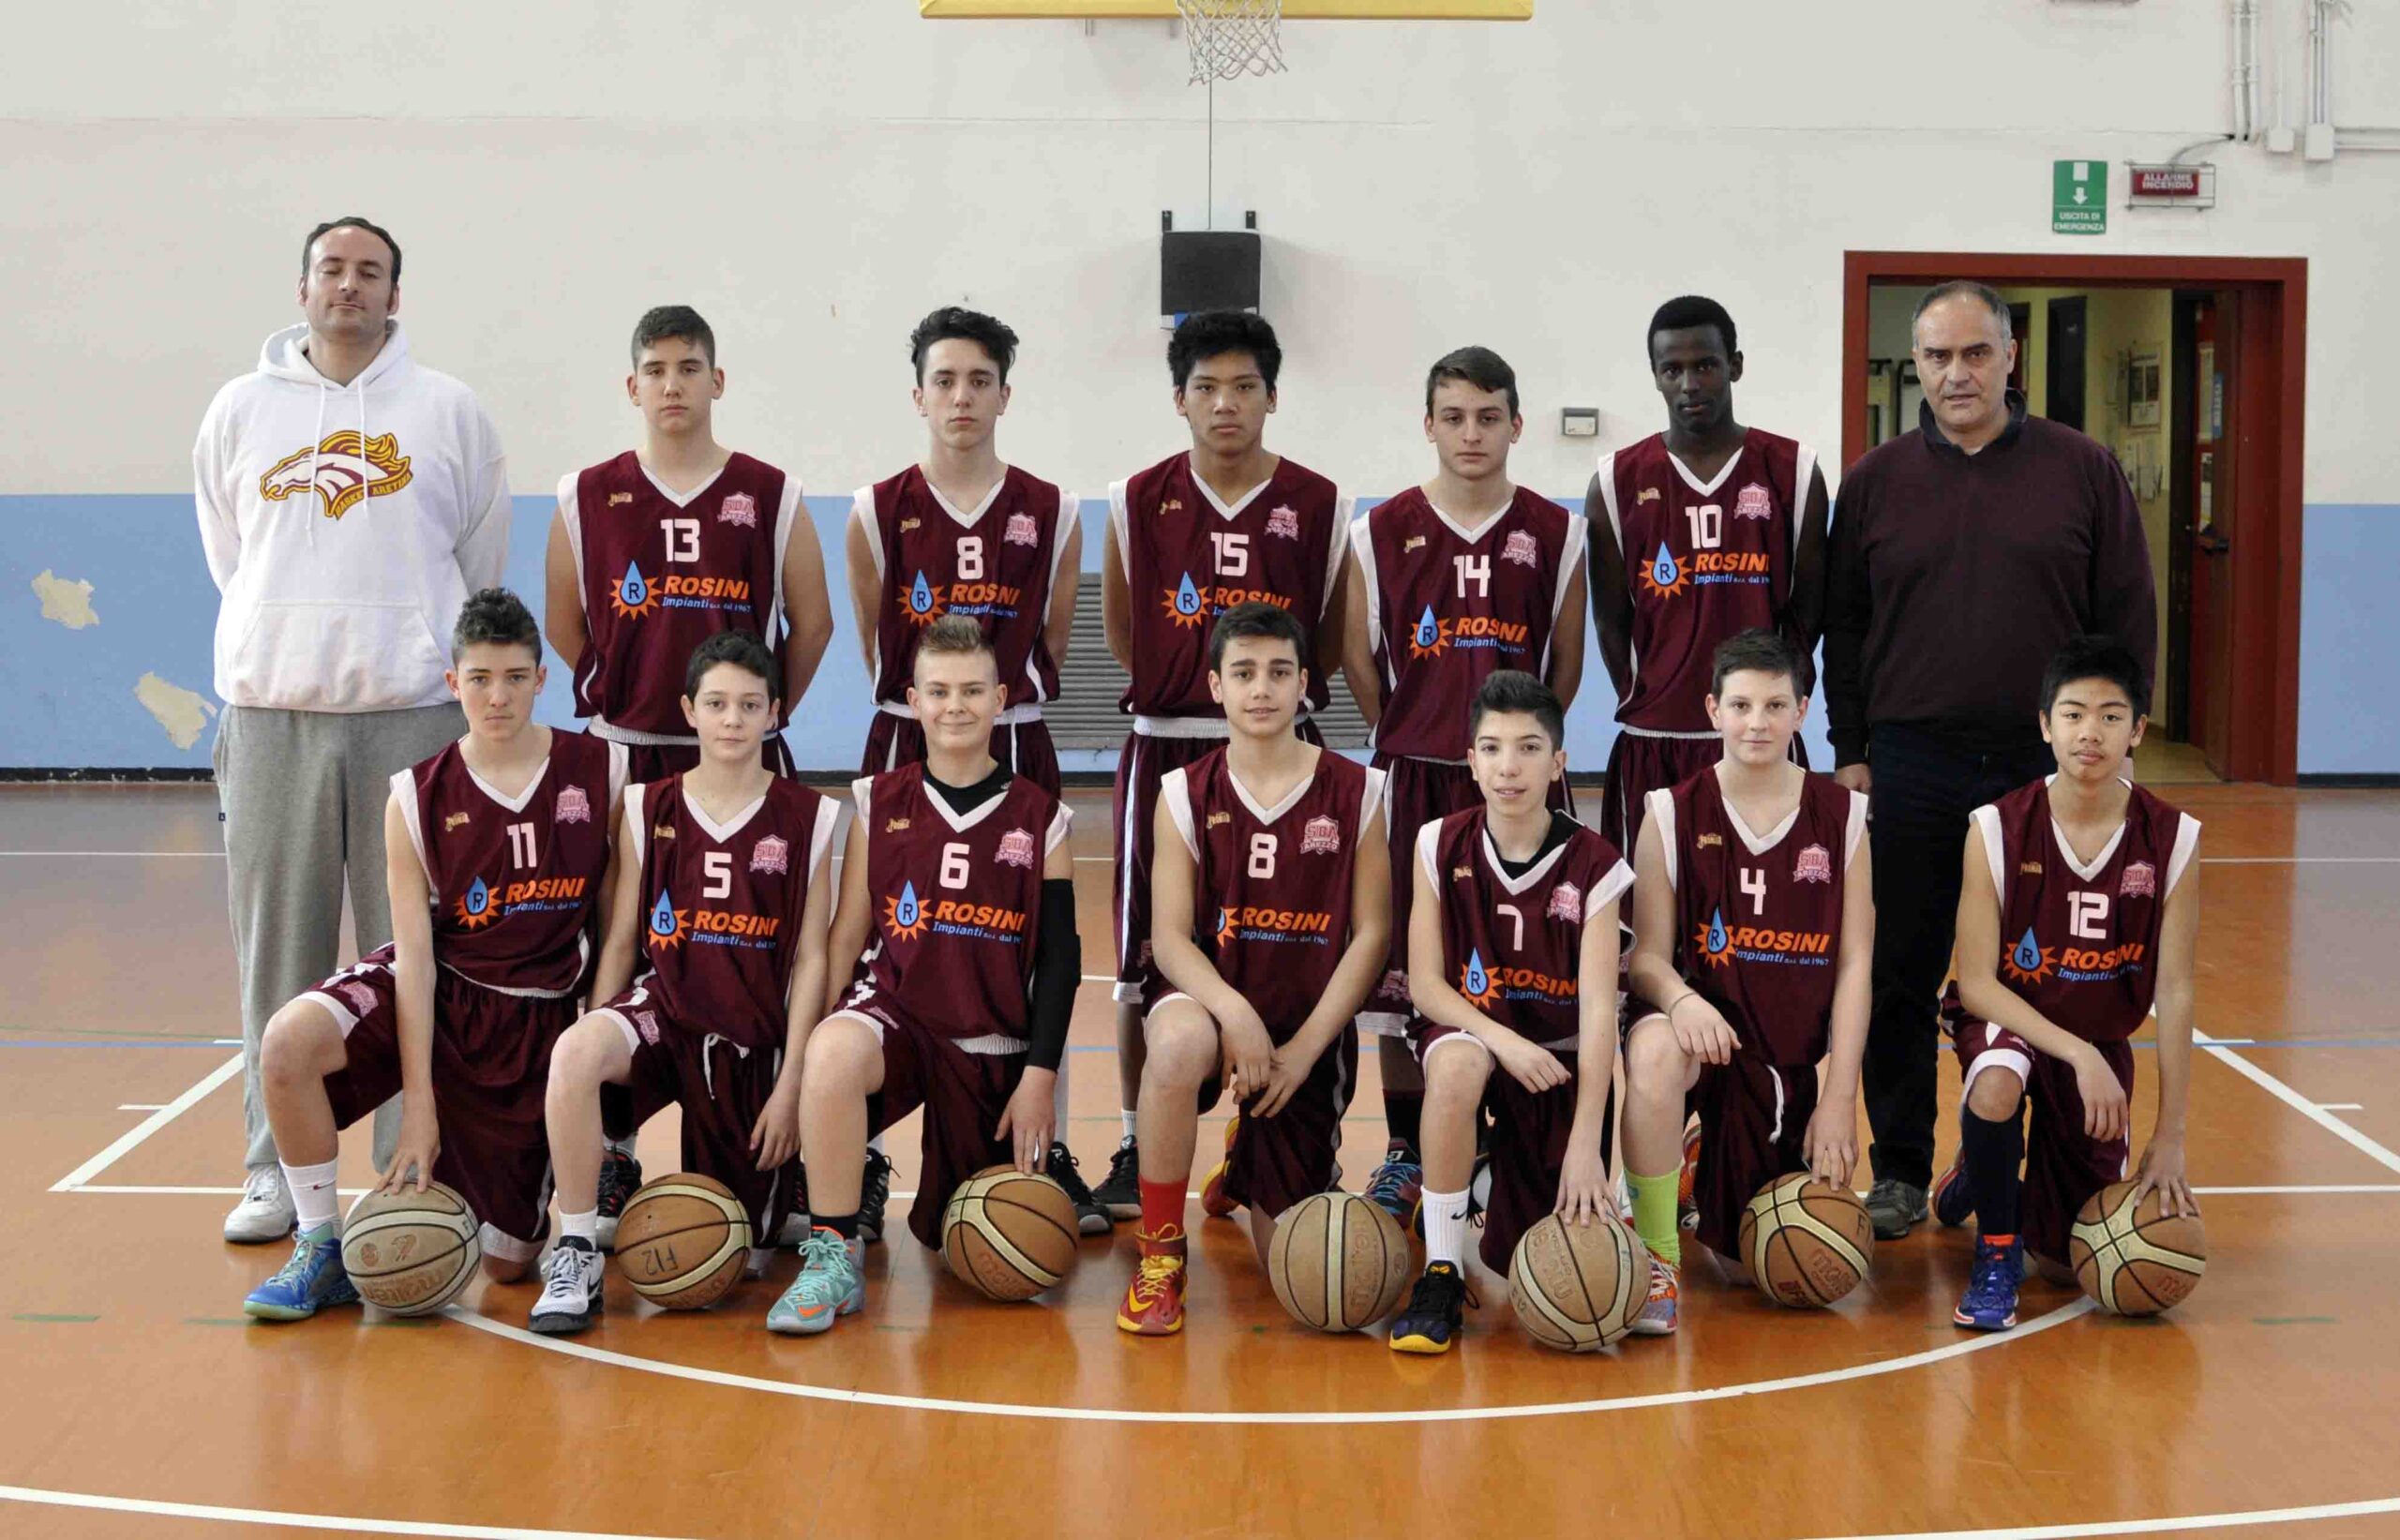 Scuola Basket Arezzo Under 15 Rosini